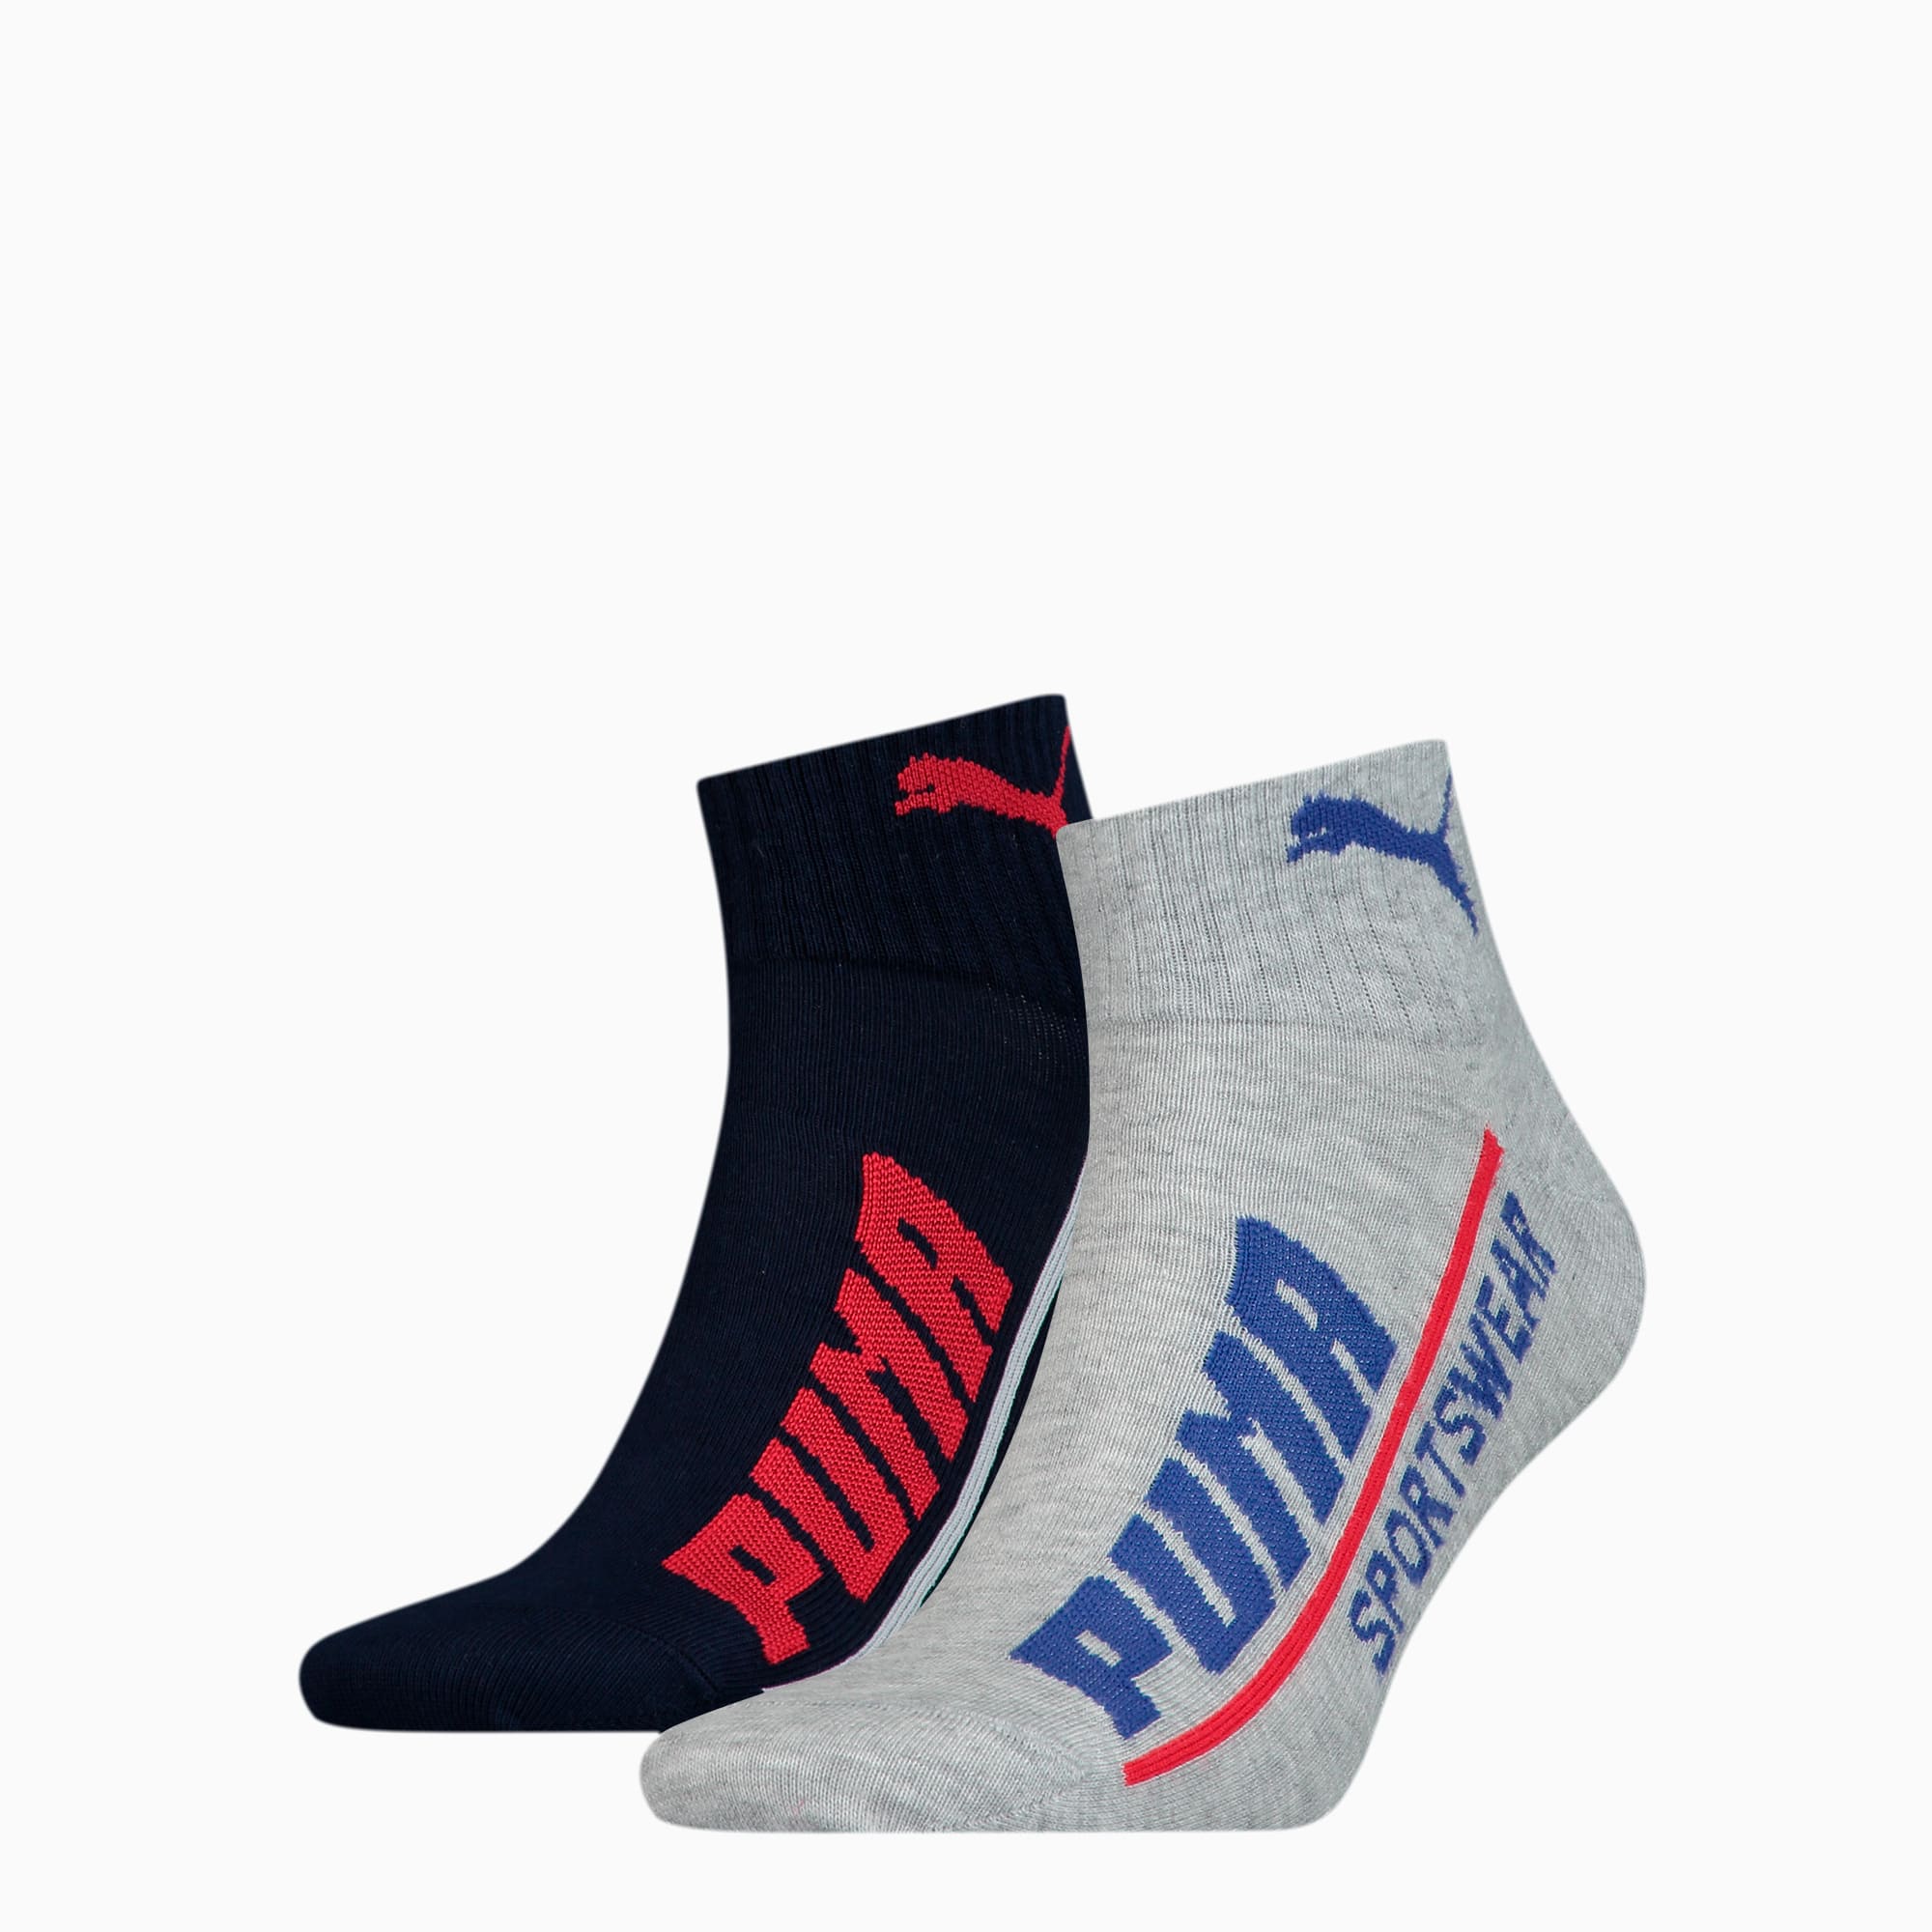 puma blue socks